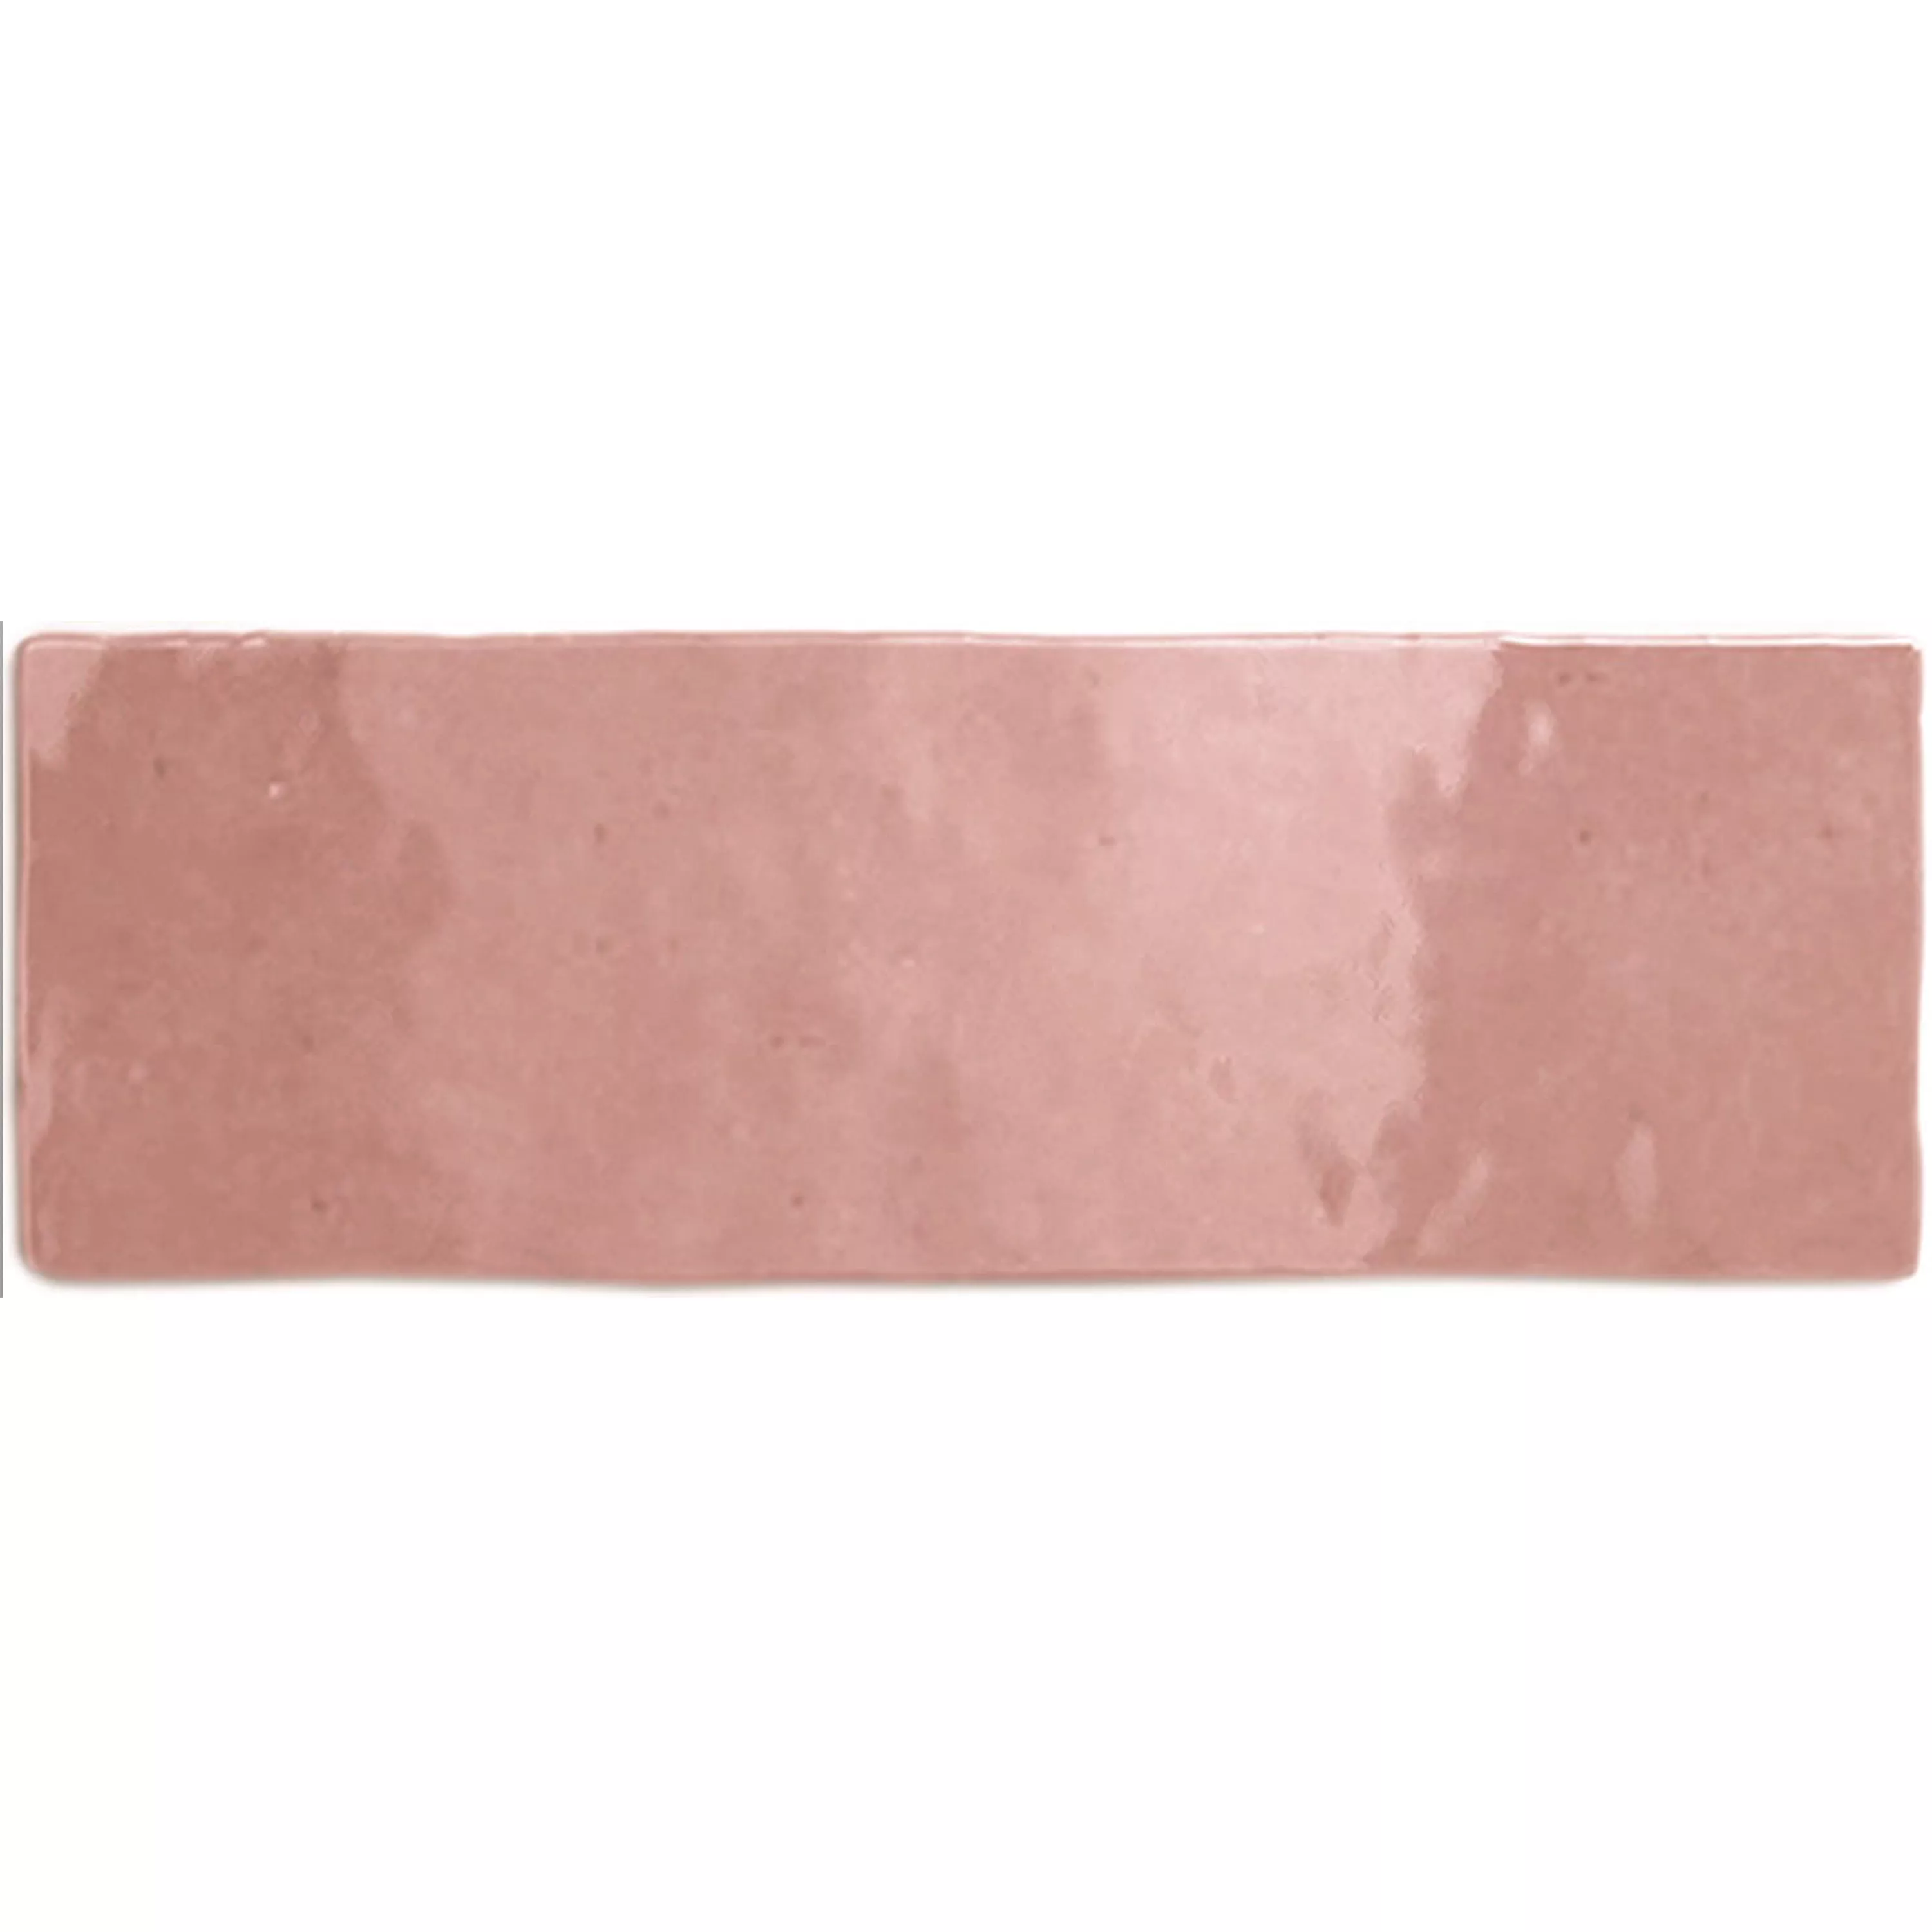 Πρότυπο Πλακάκια Tοίχου Concord Κυματική Οπτική Ροζ 6,5x20cm